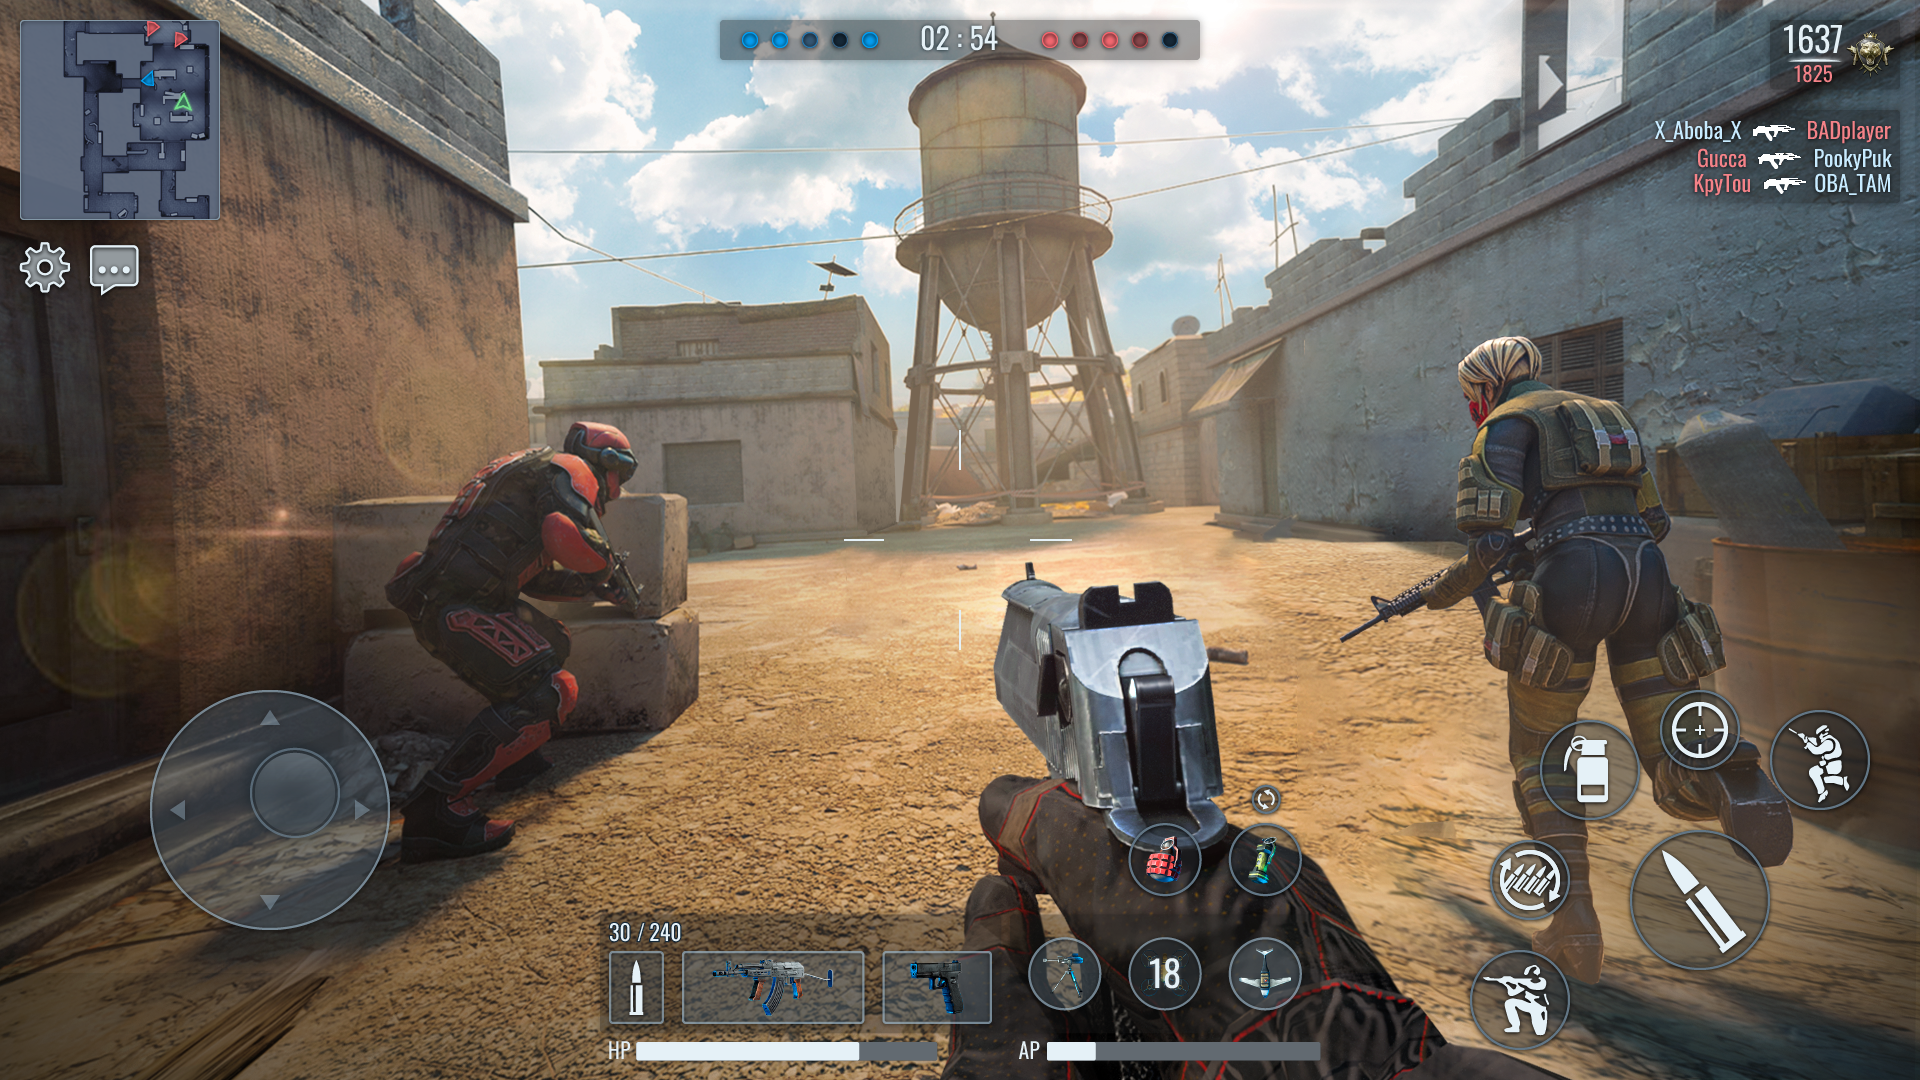 Screenshot 1 of War Gun: Ballerspiele Online 5.04.3